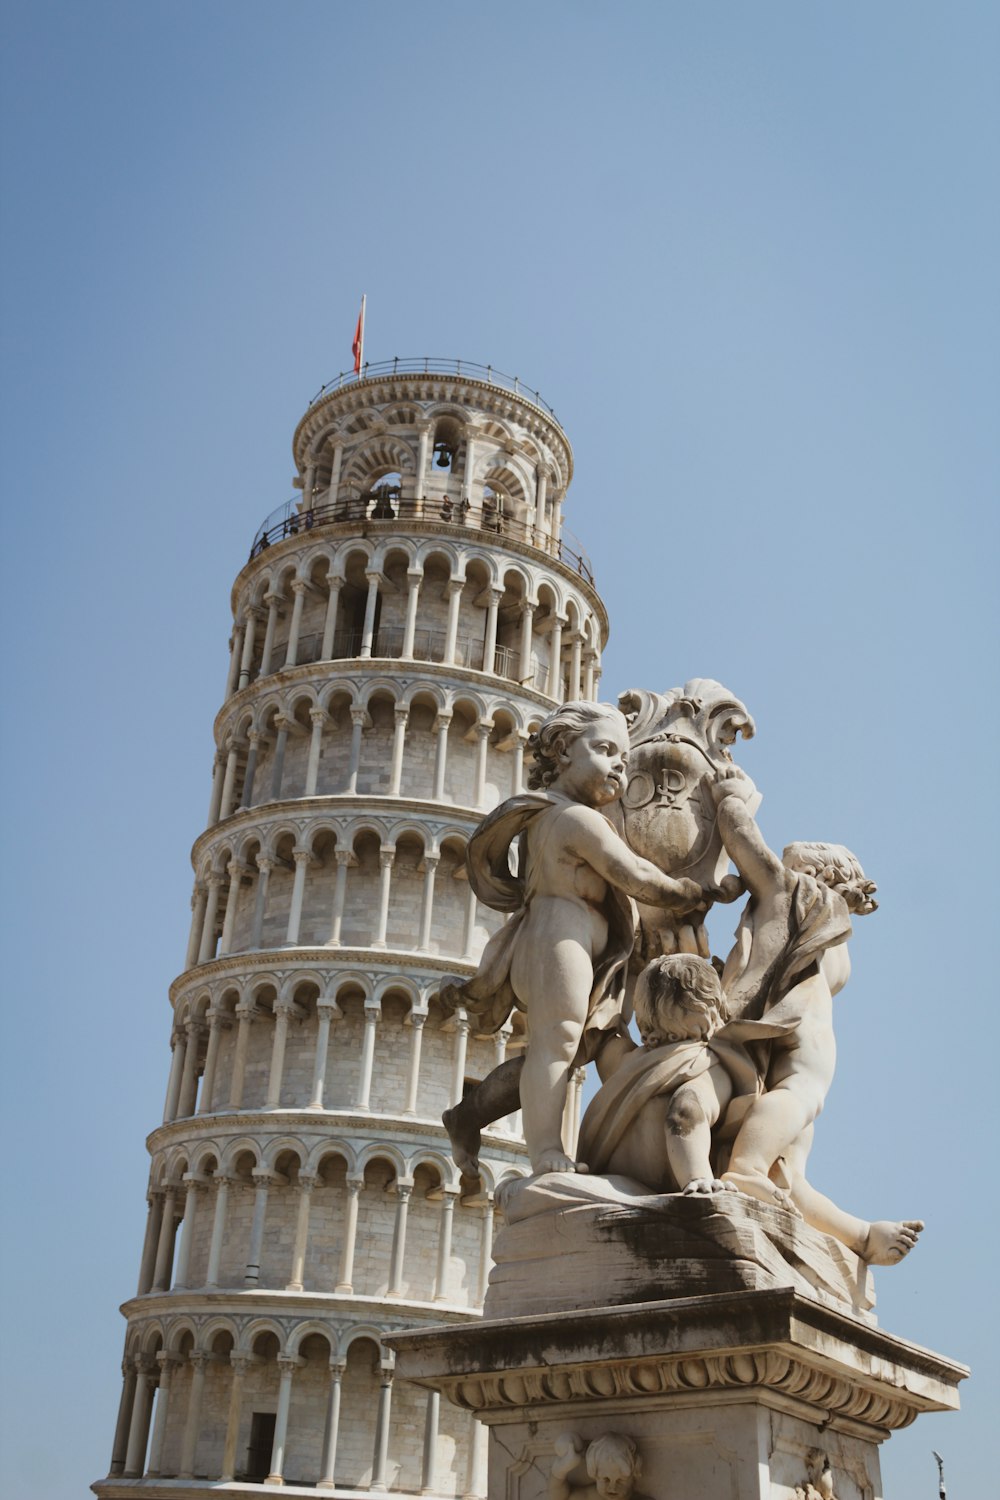 그 위에 동상이 있는 높은 탑